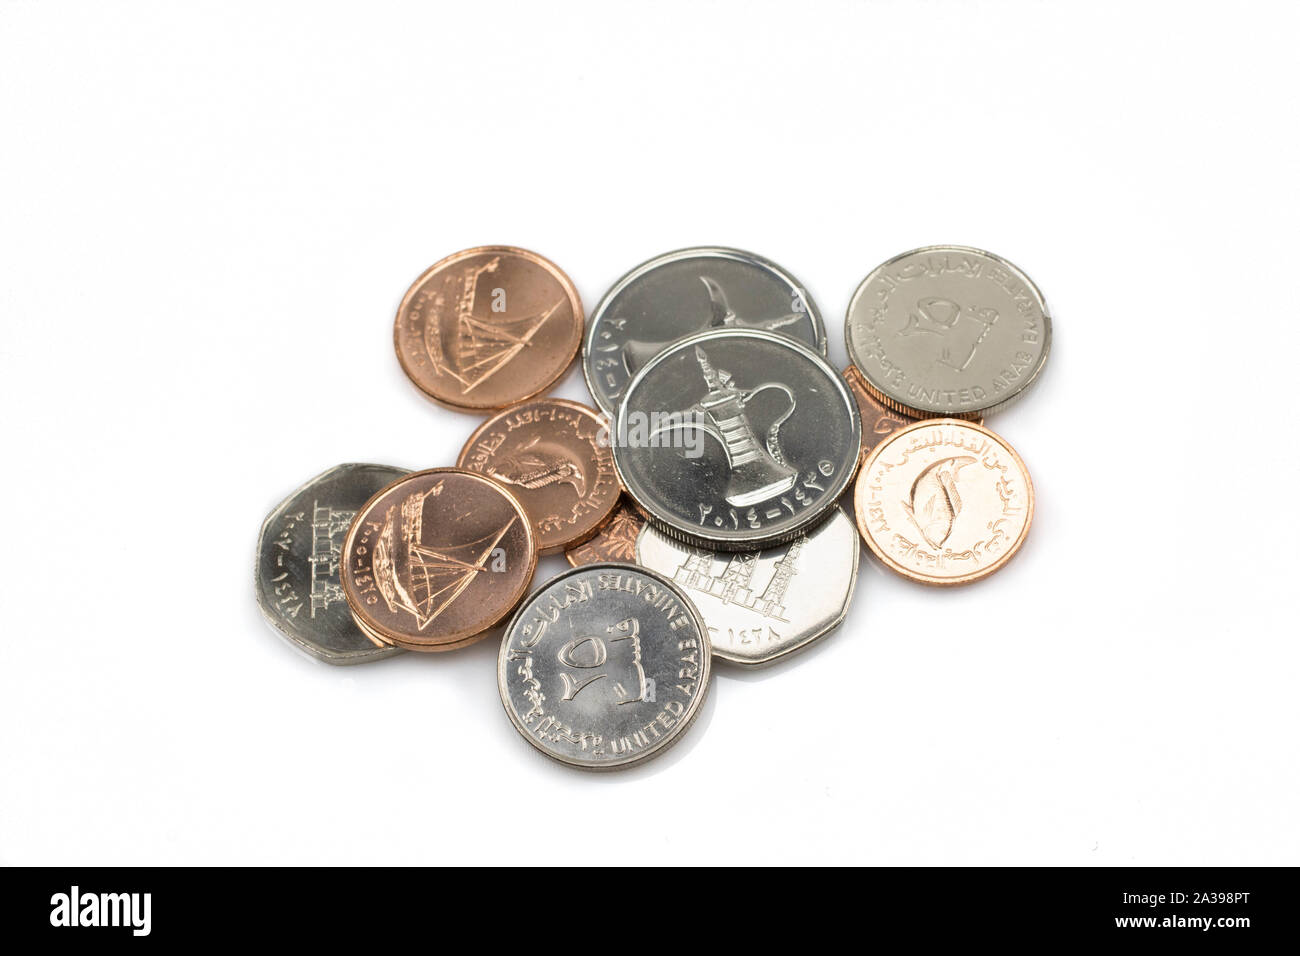 Un vicino, immagine macro di un assortimento di pila di monete provenienti dagli Emirati Arabi Uniti Foto Stock